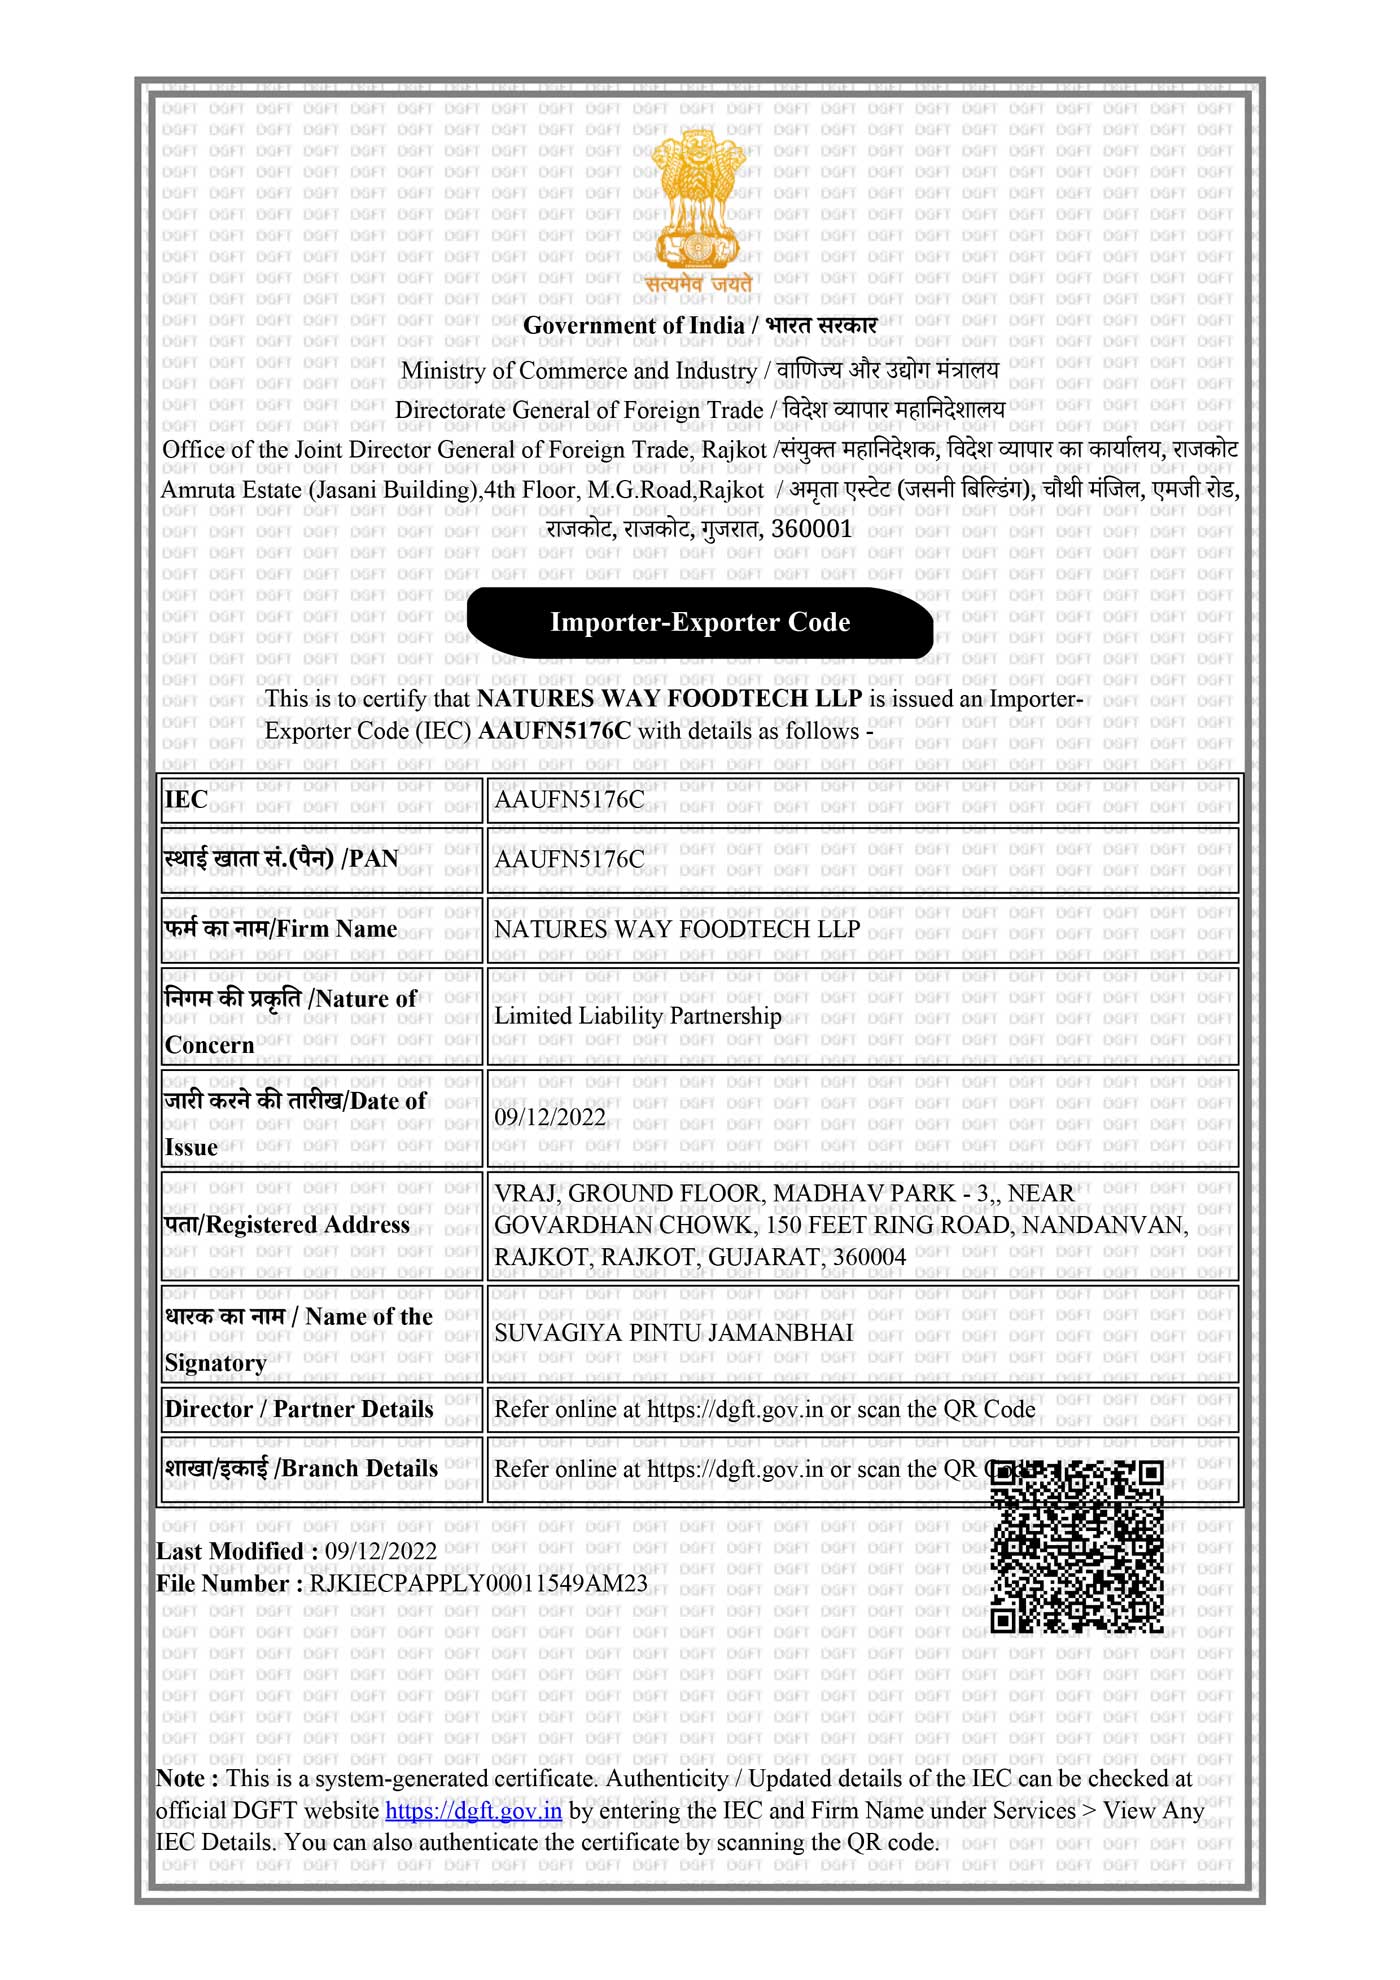 IEC-Certificate-Natures-Way-Foodtech-LLP.jpg__PID:c4edf1bb-8d68-4f7b-b4df-b87840331326